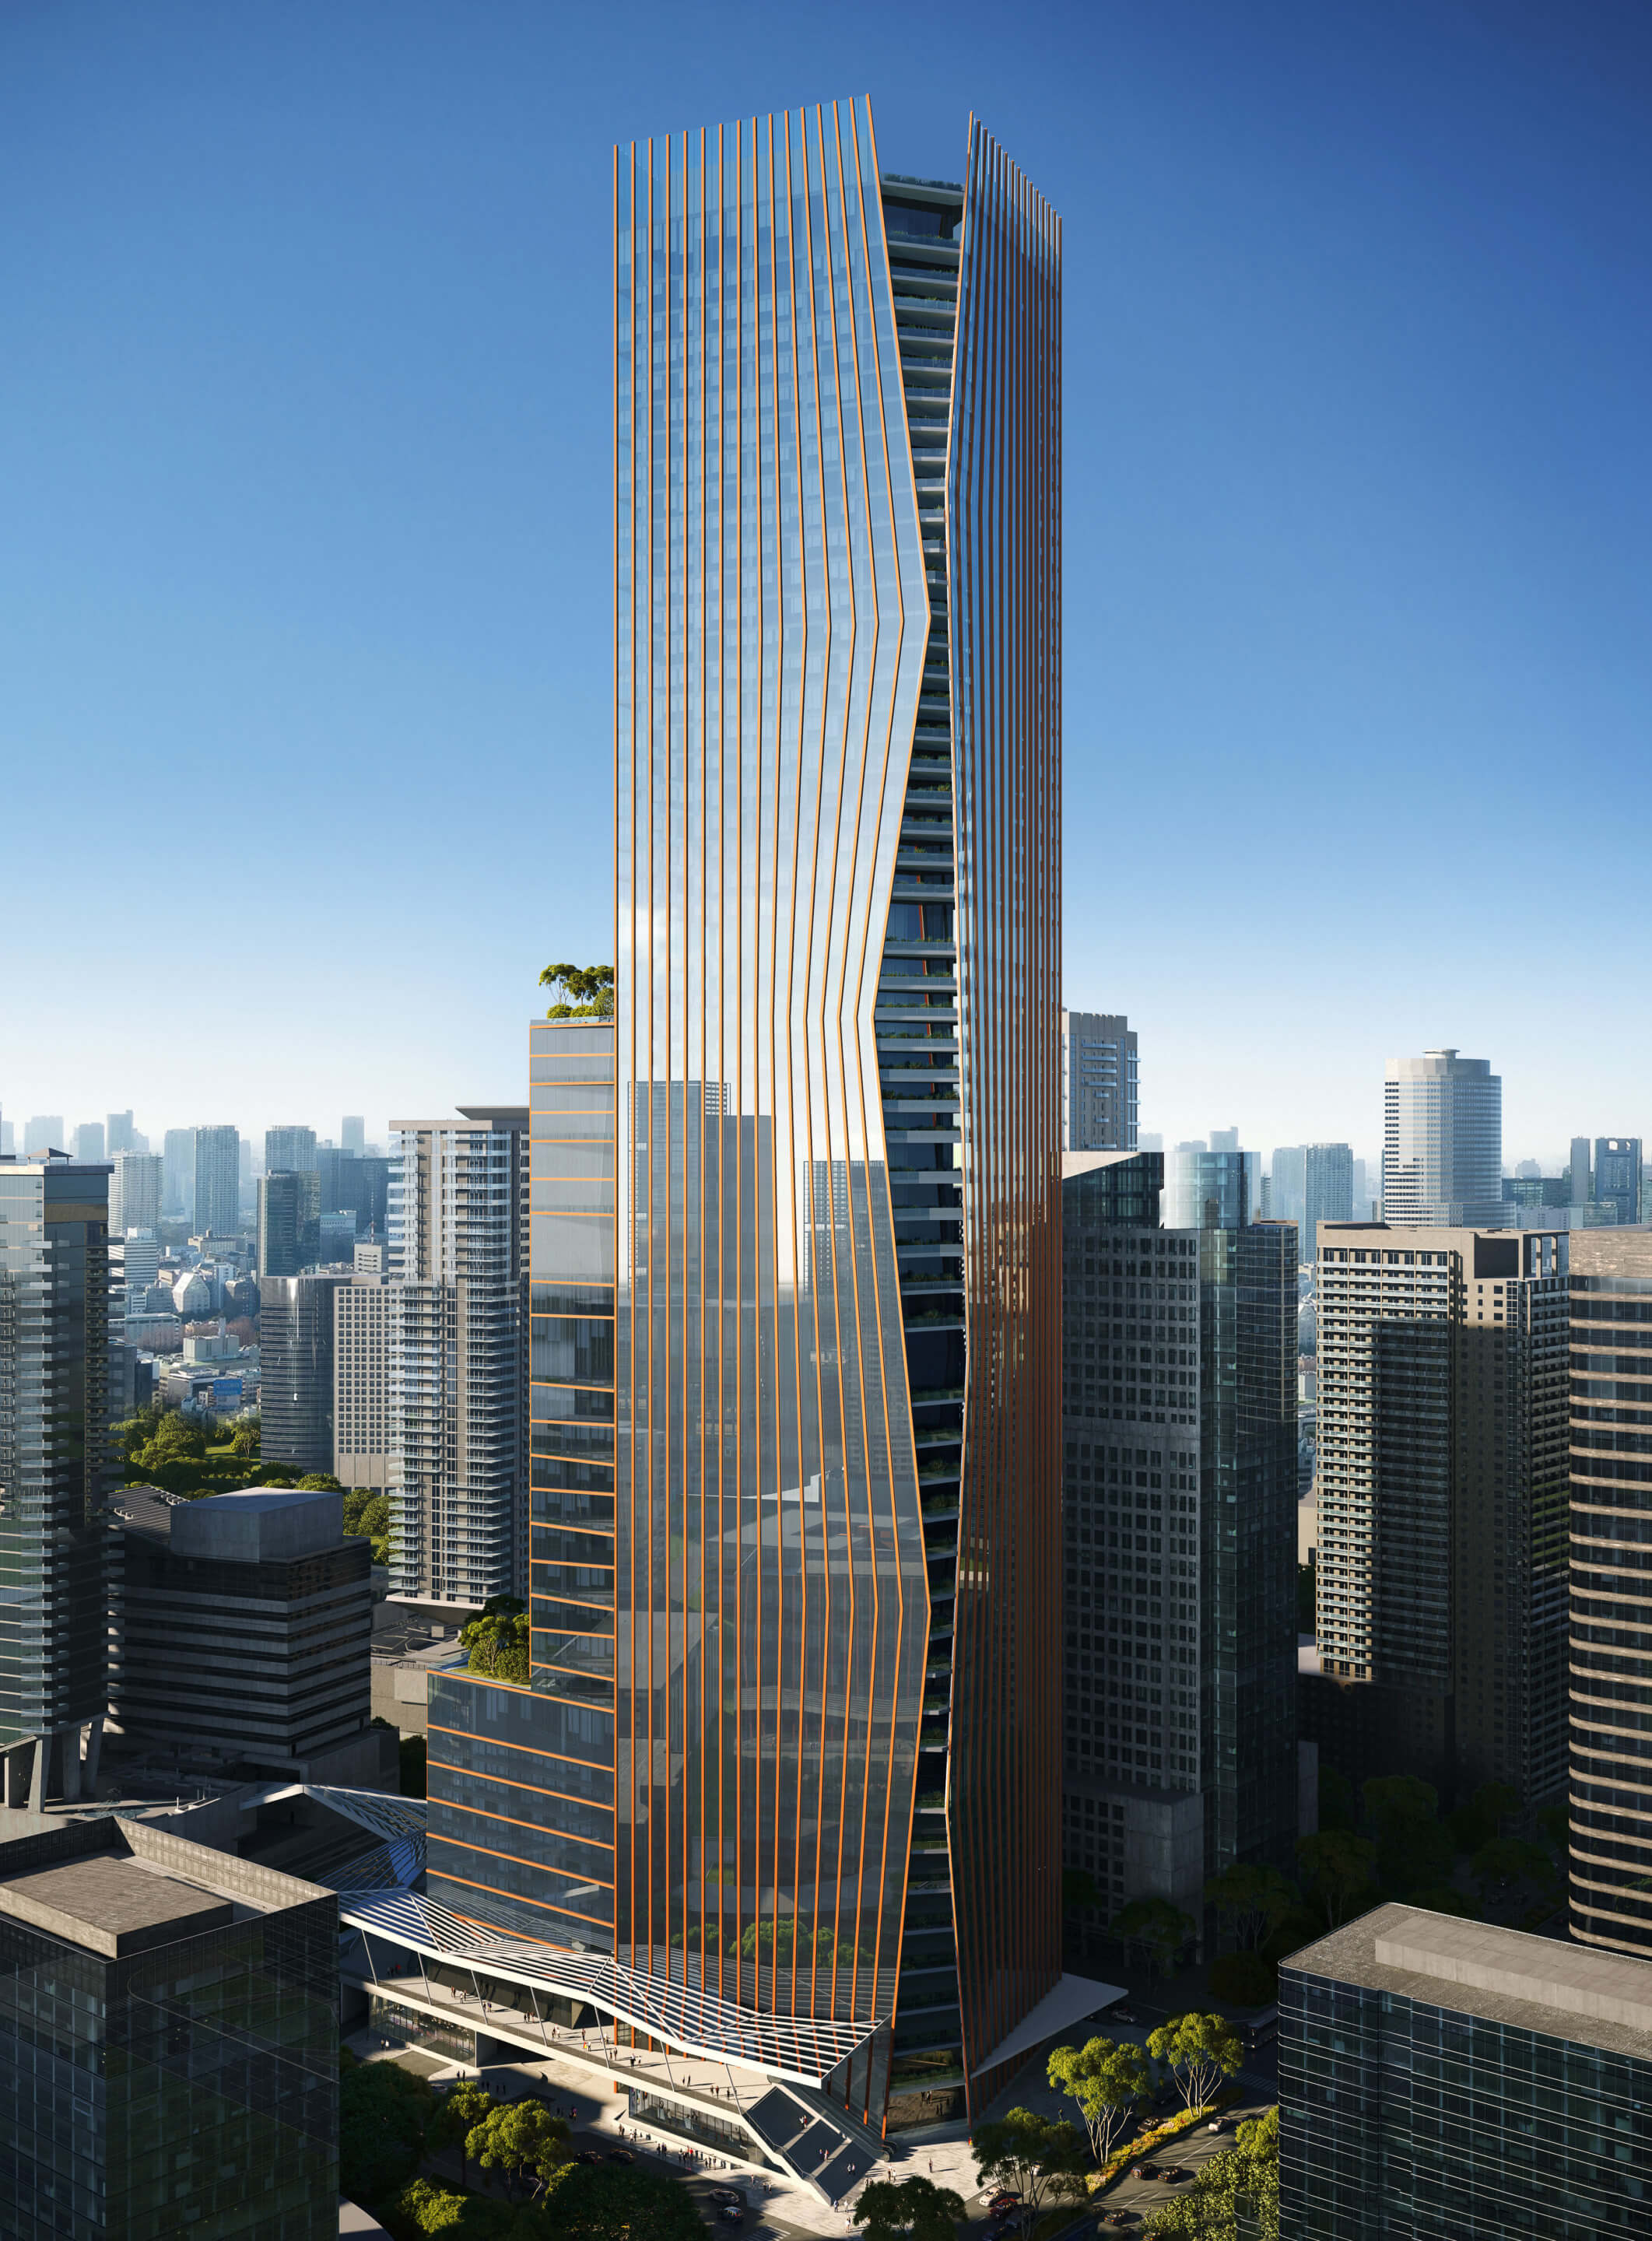 exterior rendering of a supertall skyscraper